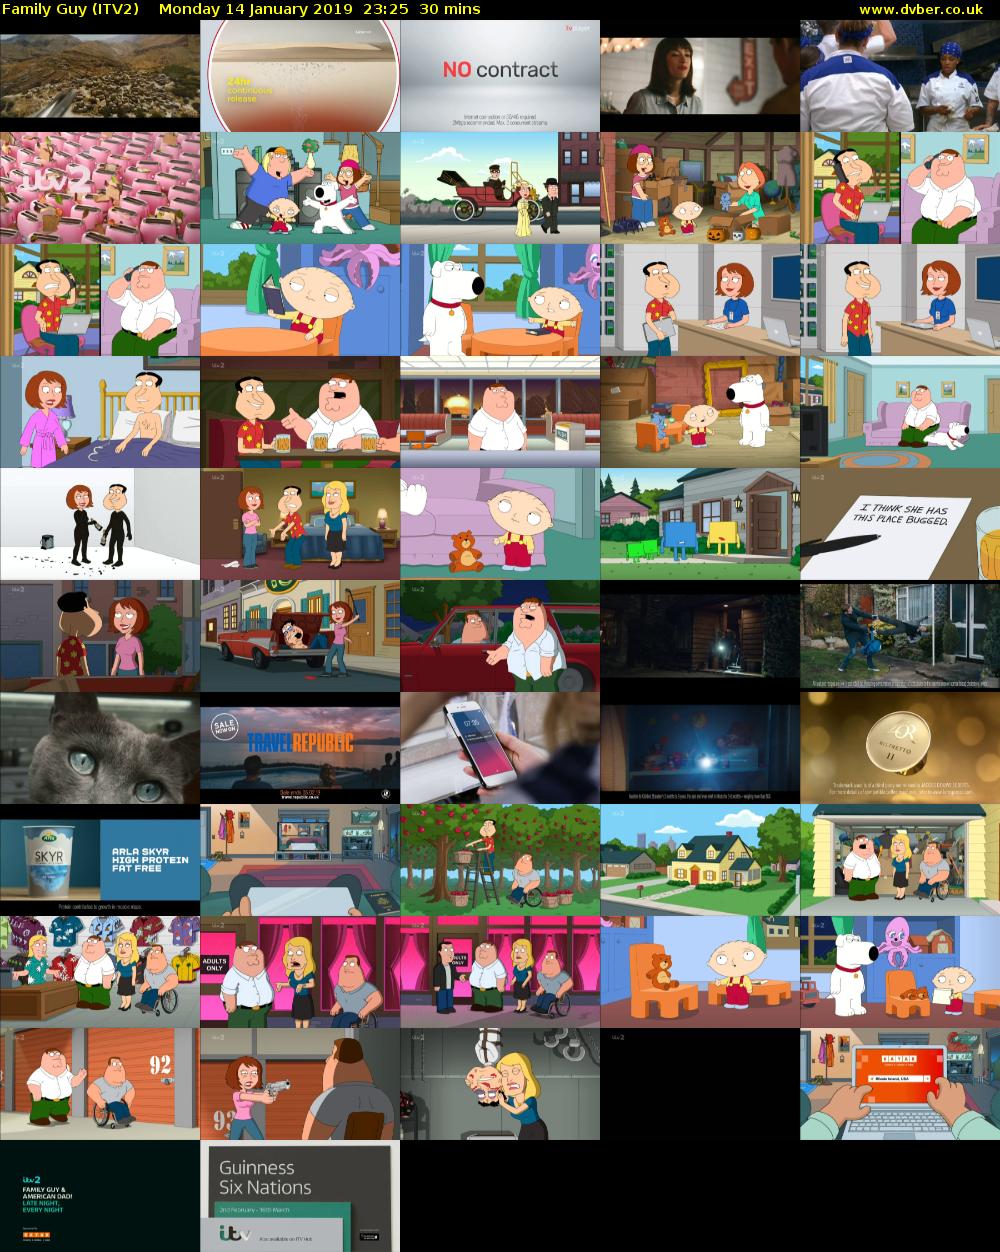 Family Guy (ITV2) Monday 14 January 2019 23:25 - 23:55